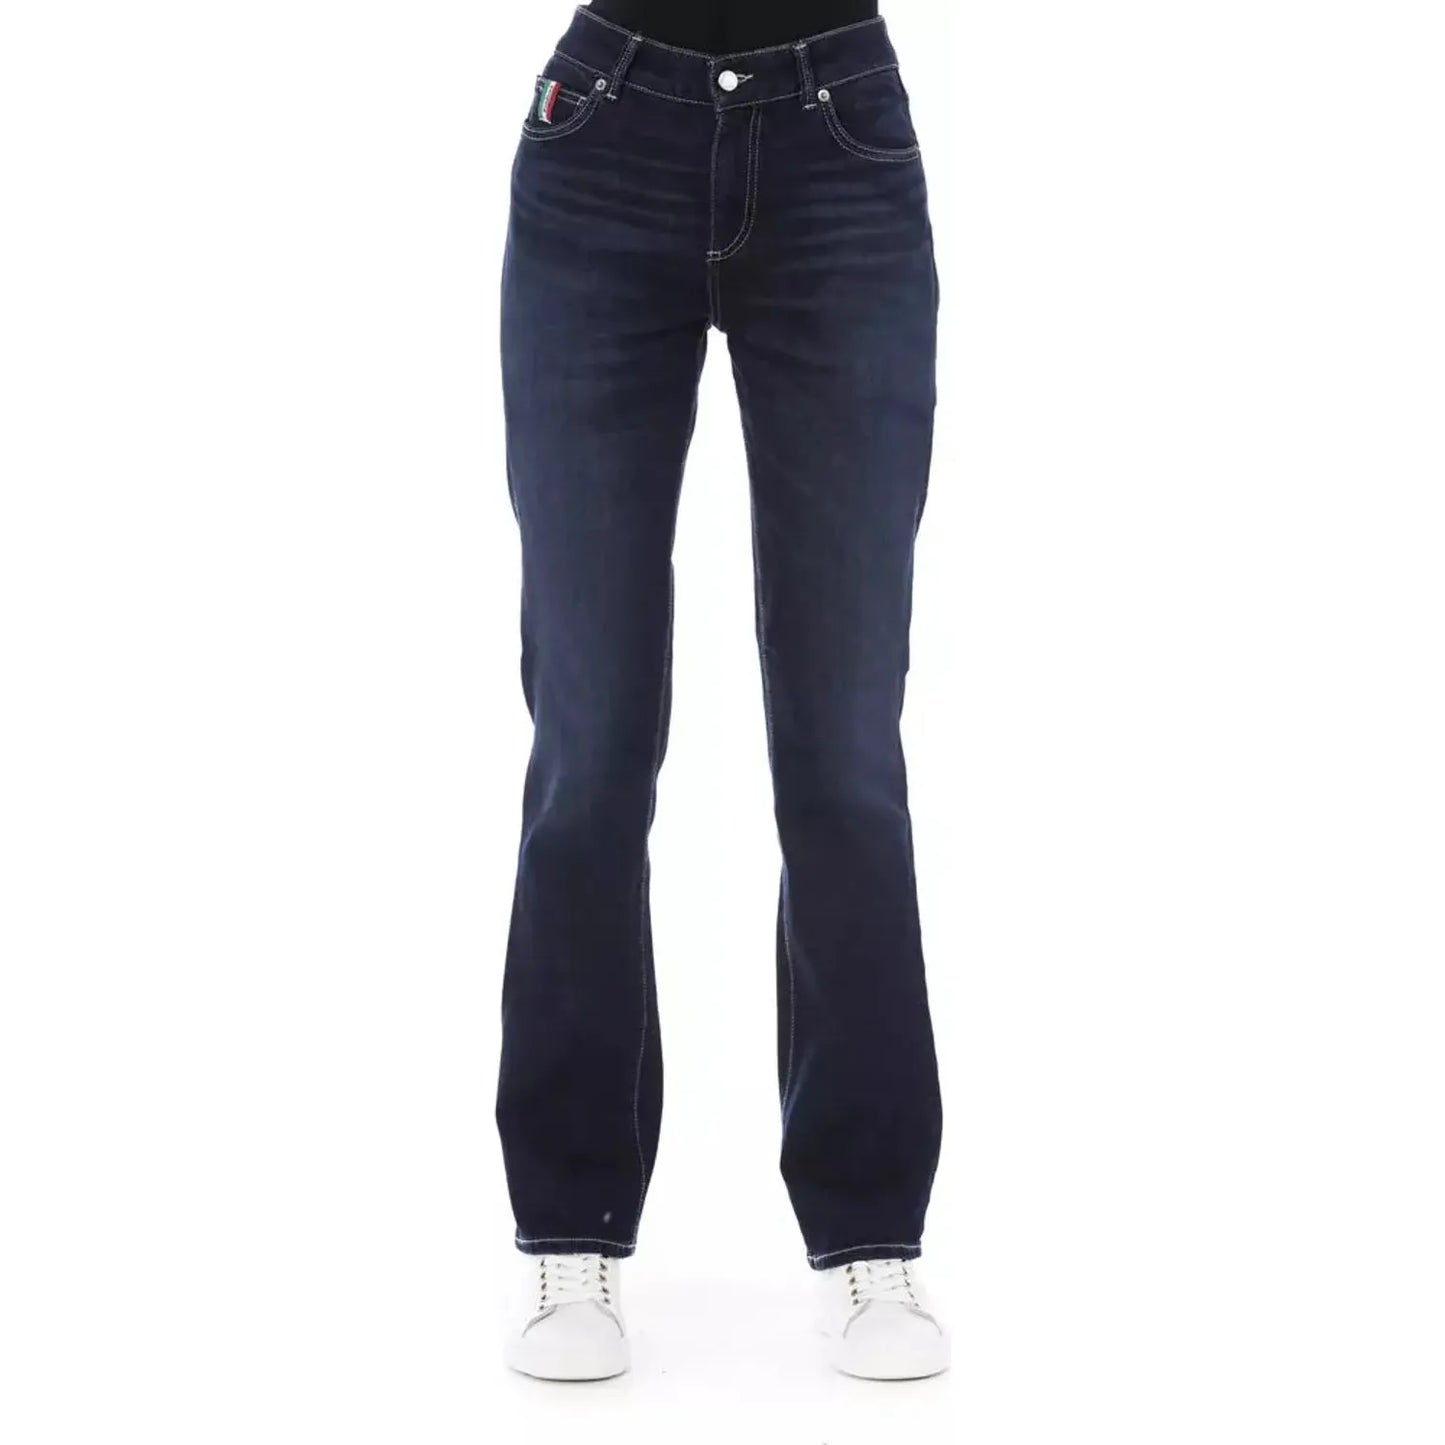 Baldinini Trend Chic Tricolor Pocket Jeans blue-cotton-jeans-pant-177